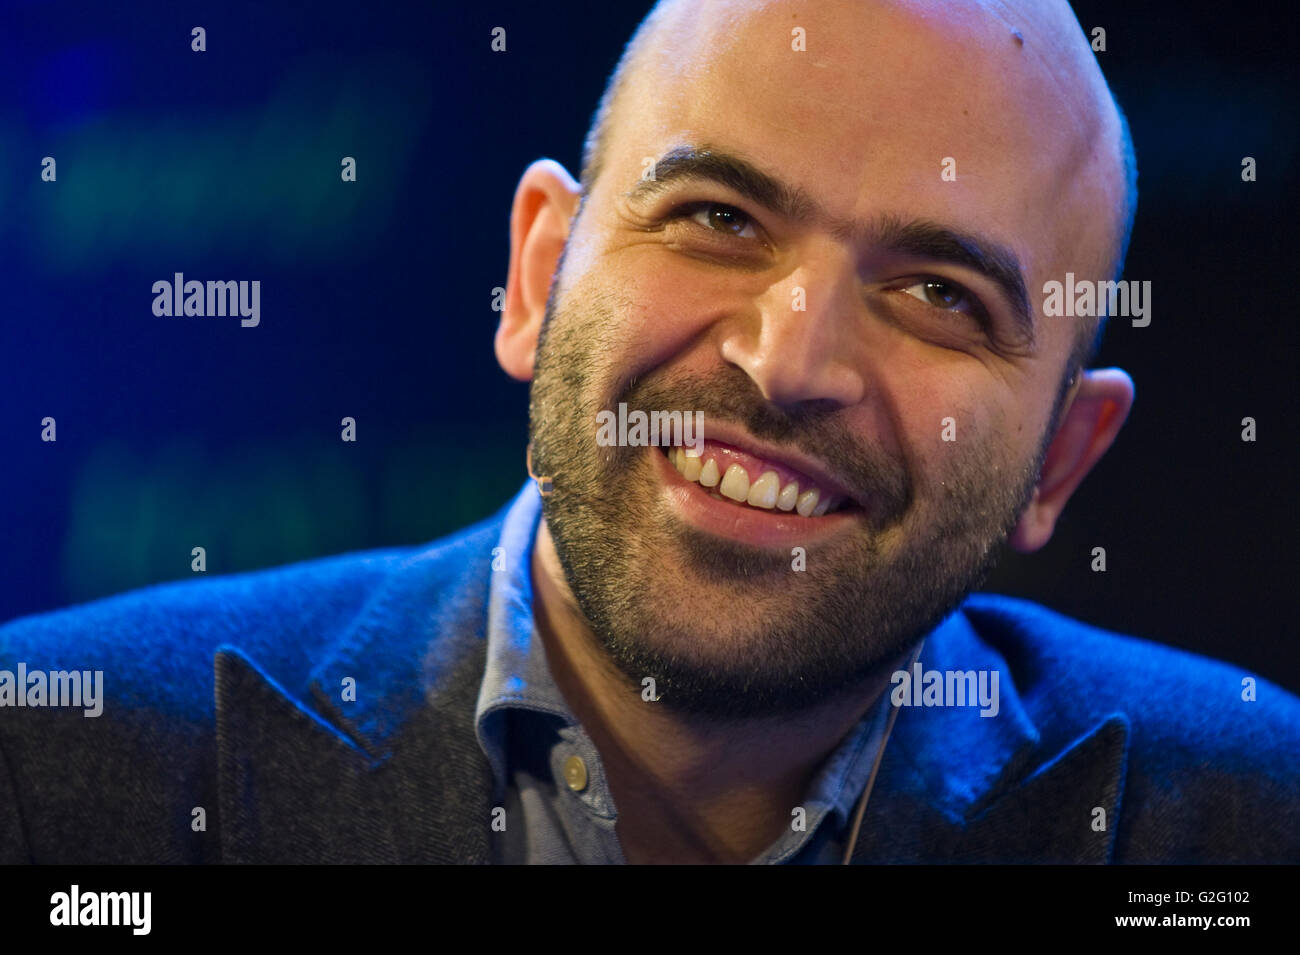 Roberto Saviano journaliste d'& auteur qui a exposé le crime organisé en Italie s'exprimant sur scène à Hay Festival 2016 Banque D'Images